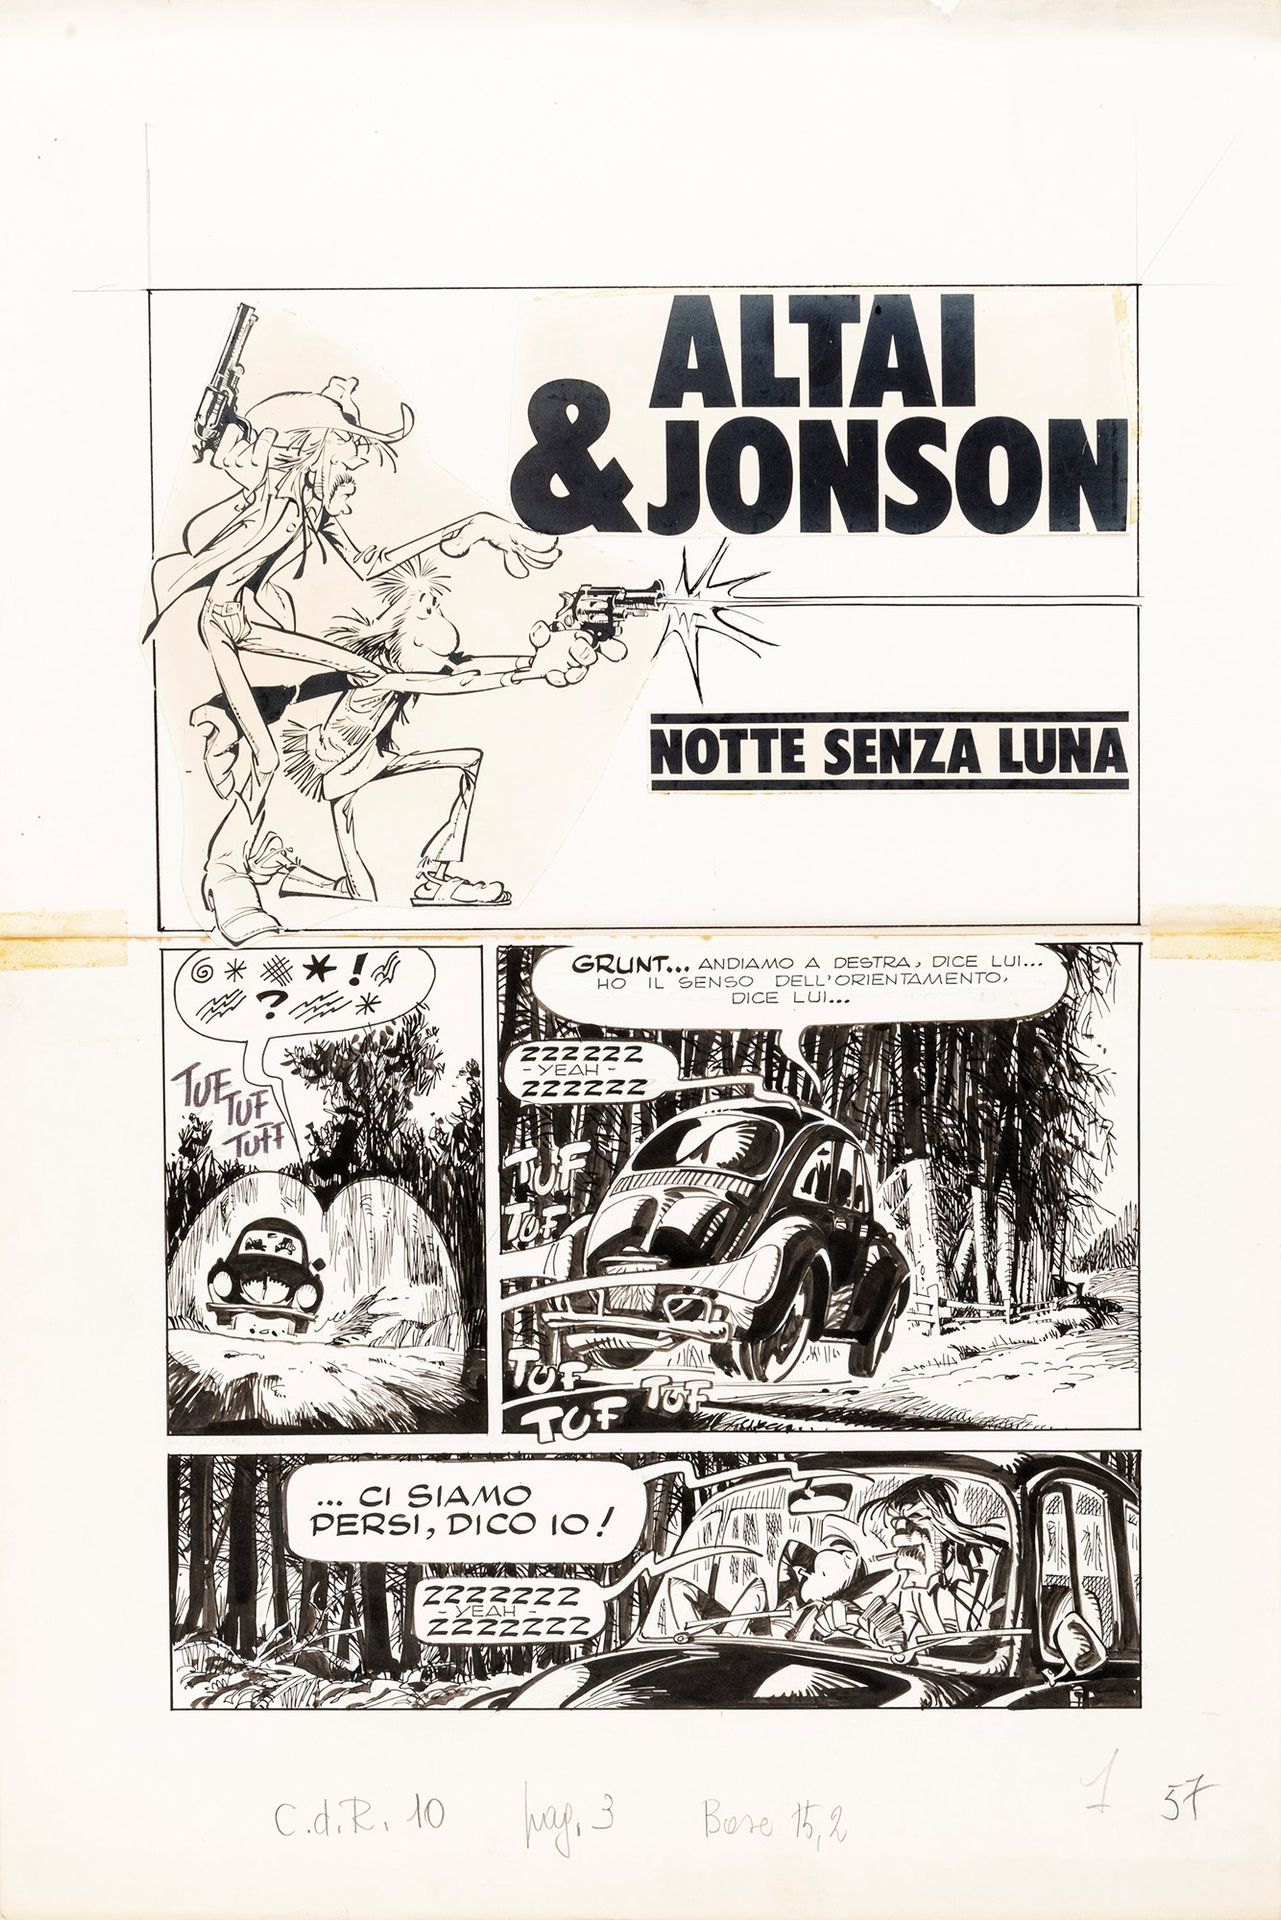 Giorgio Cavazzano Altai & Jonson - Notte senza luna, 1976

lápiz y tinta sobre c&hellip;